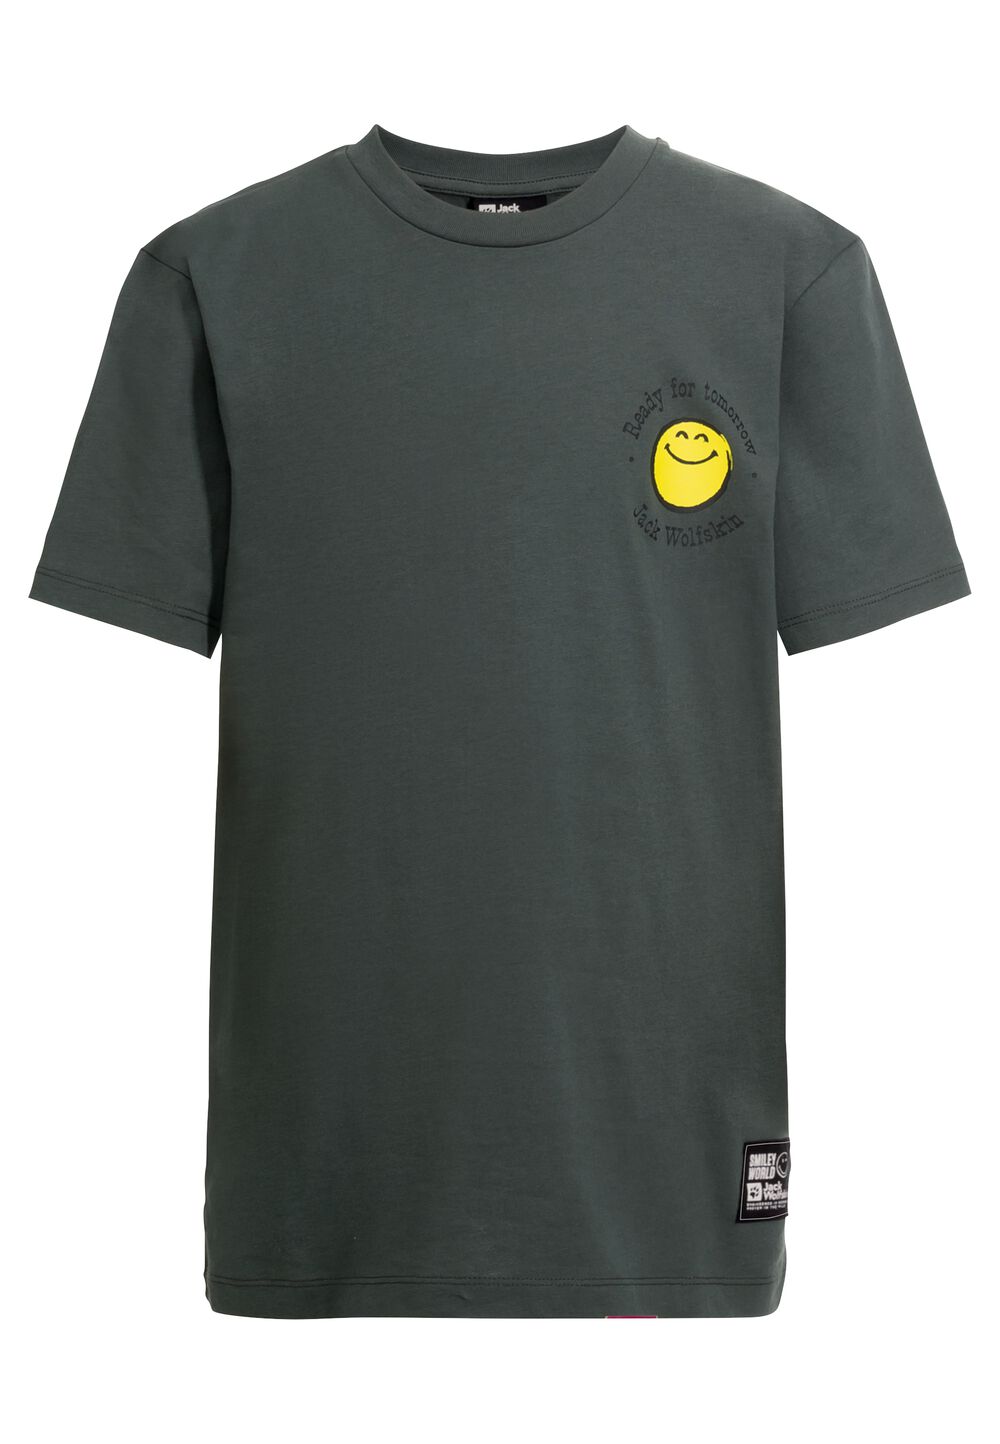 Jack Wolfskin Smileyworld T-Shirt Youth T-shirt van biologisch katoen tieners 176 grijs slate green